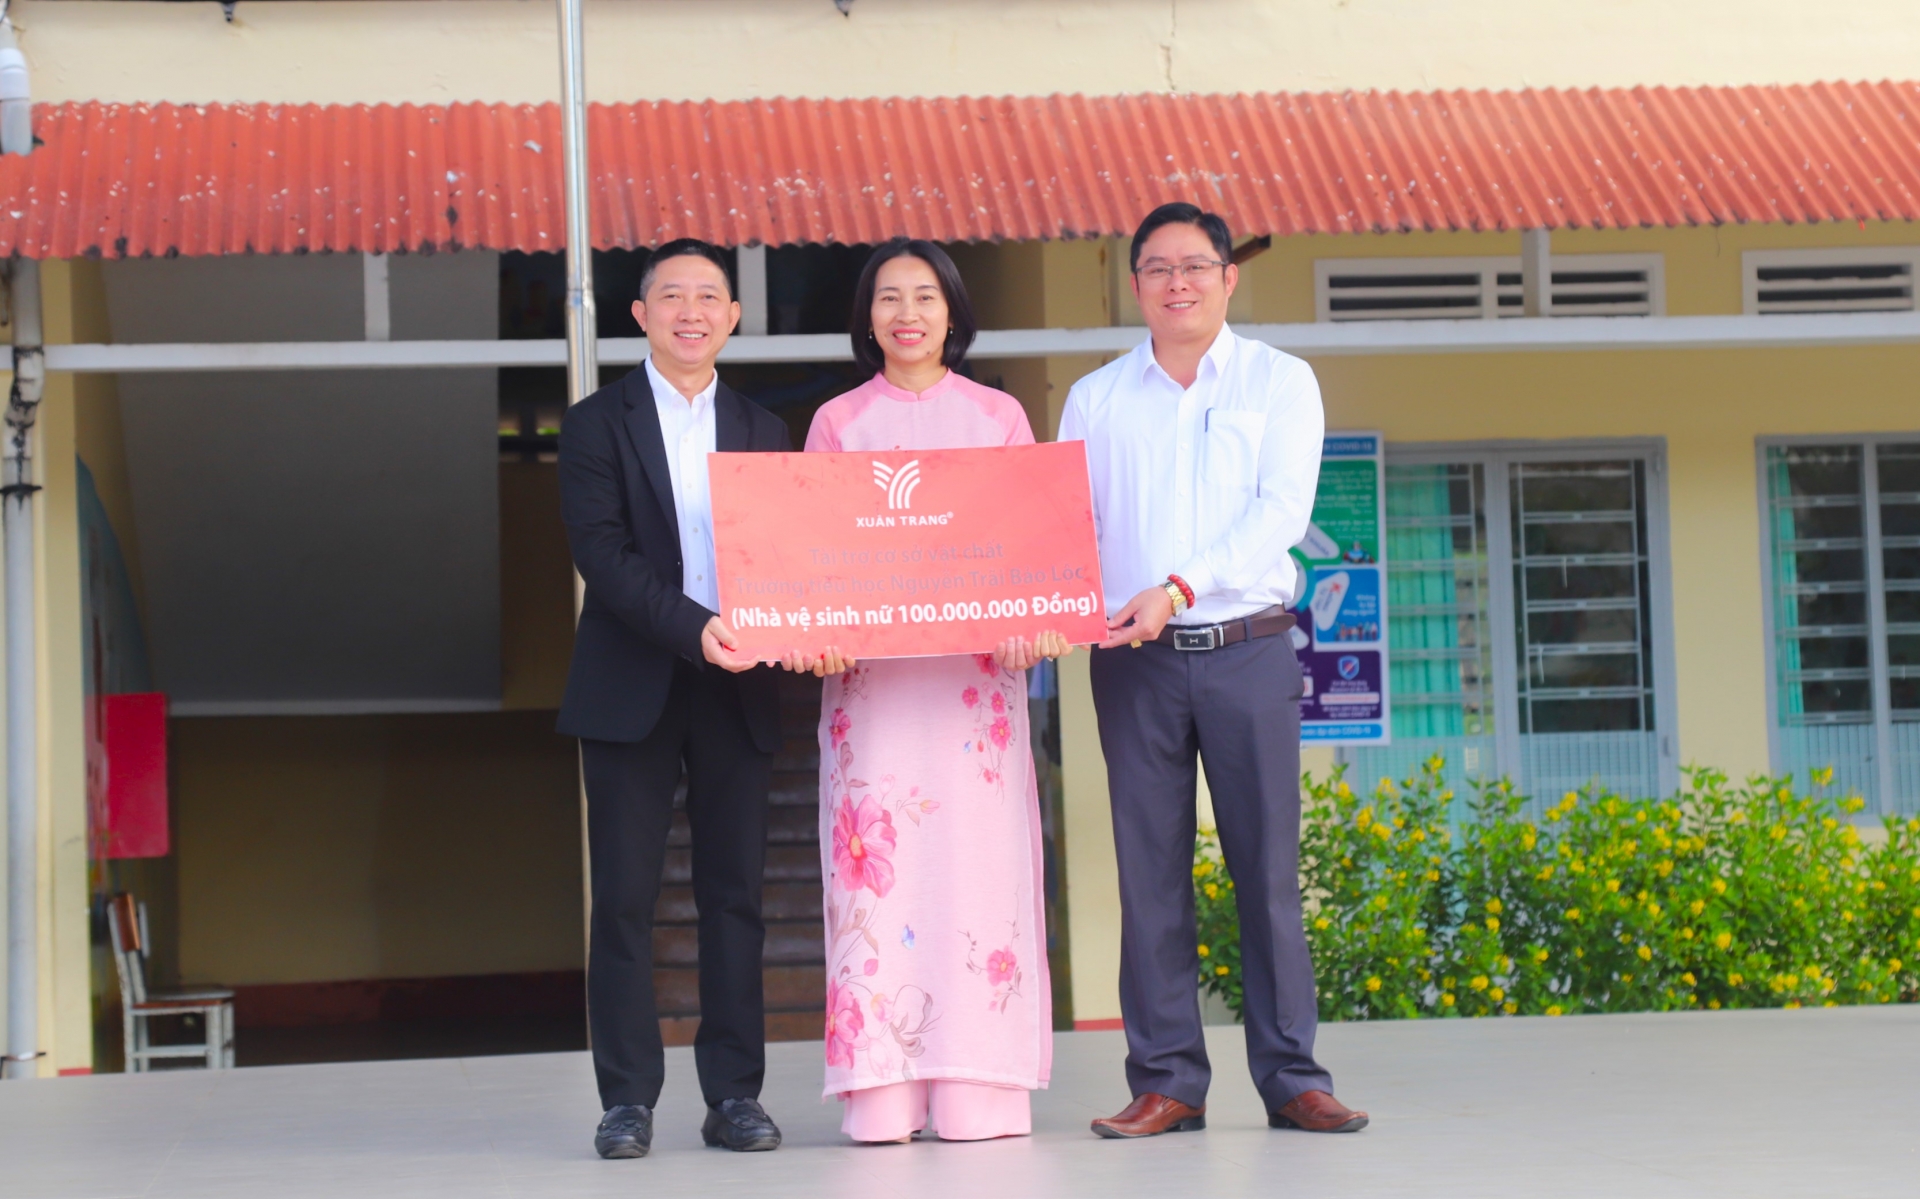 Bảo Lộc: Trao tặng công trình nhà vệ sinh trị giá 100 triệu đồng cho trường học